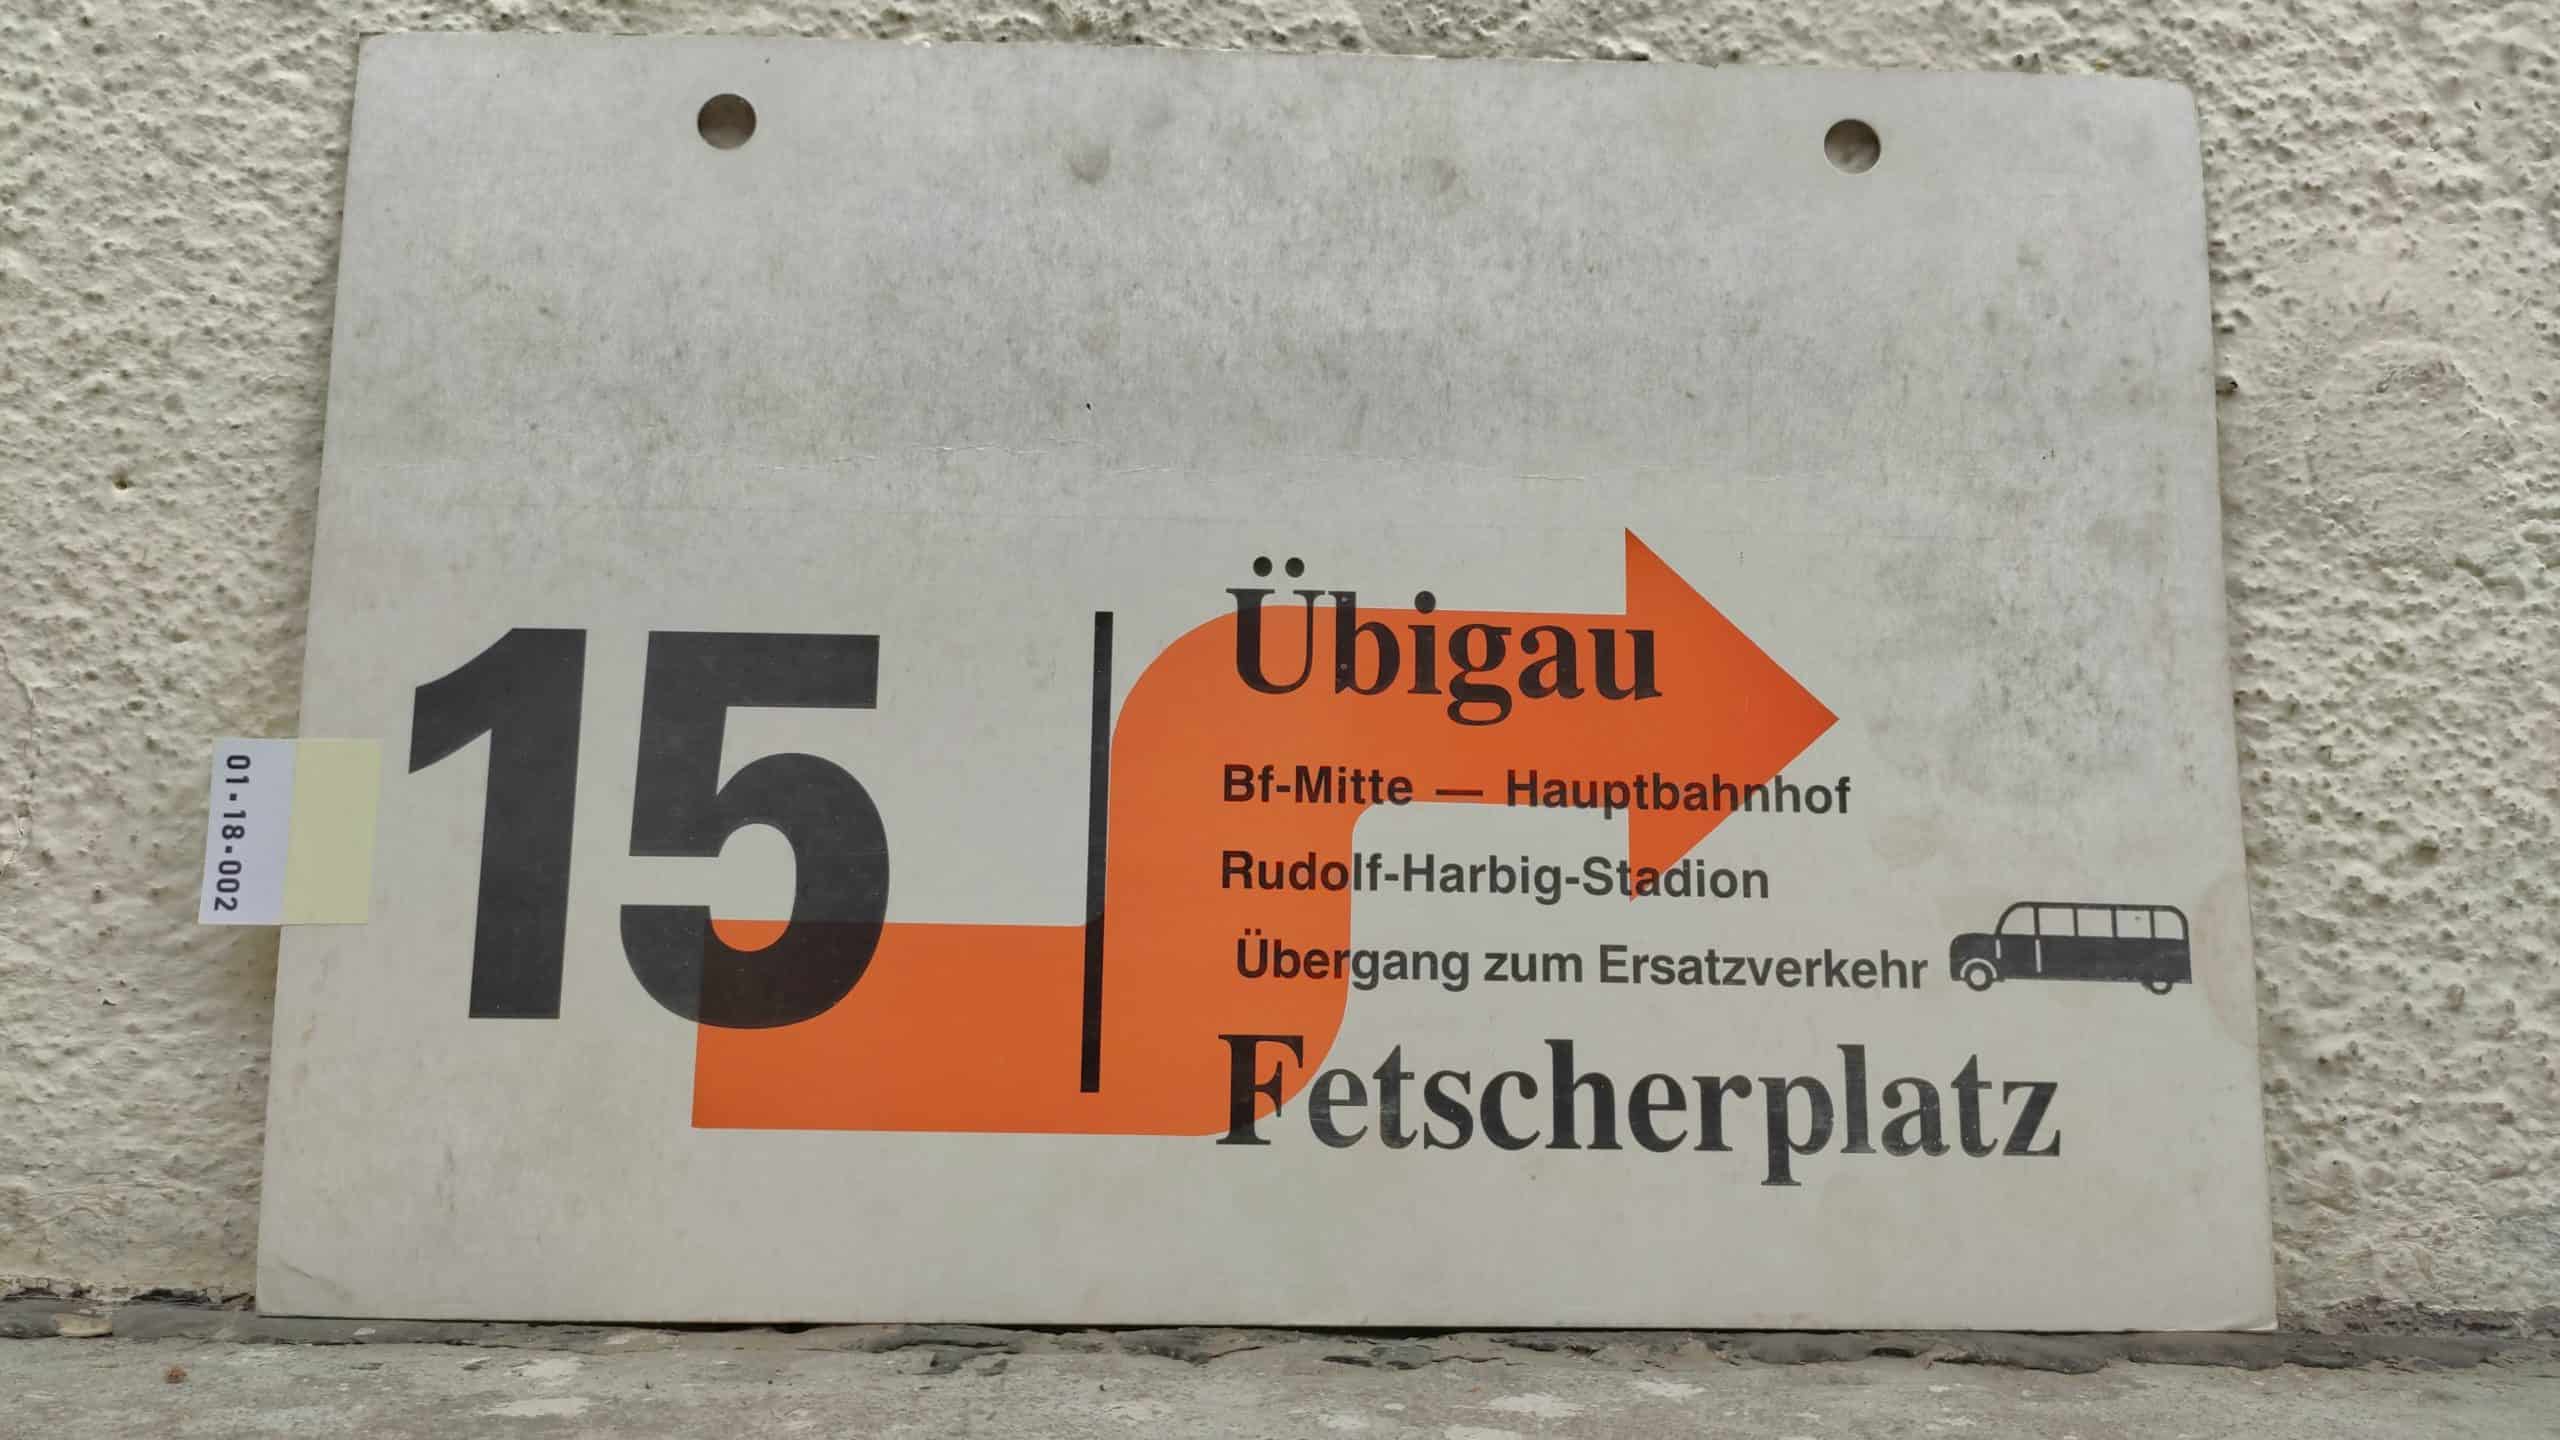 15 Übigau – Fetscherplatz